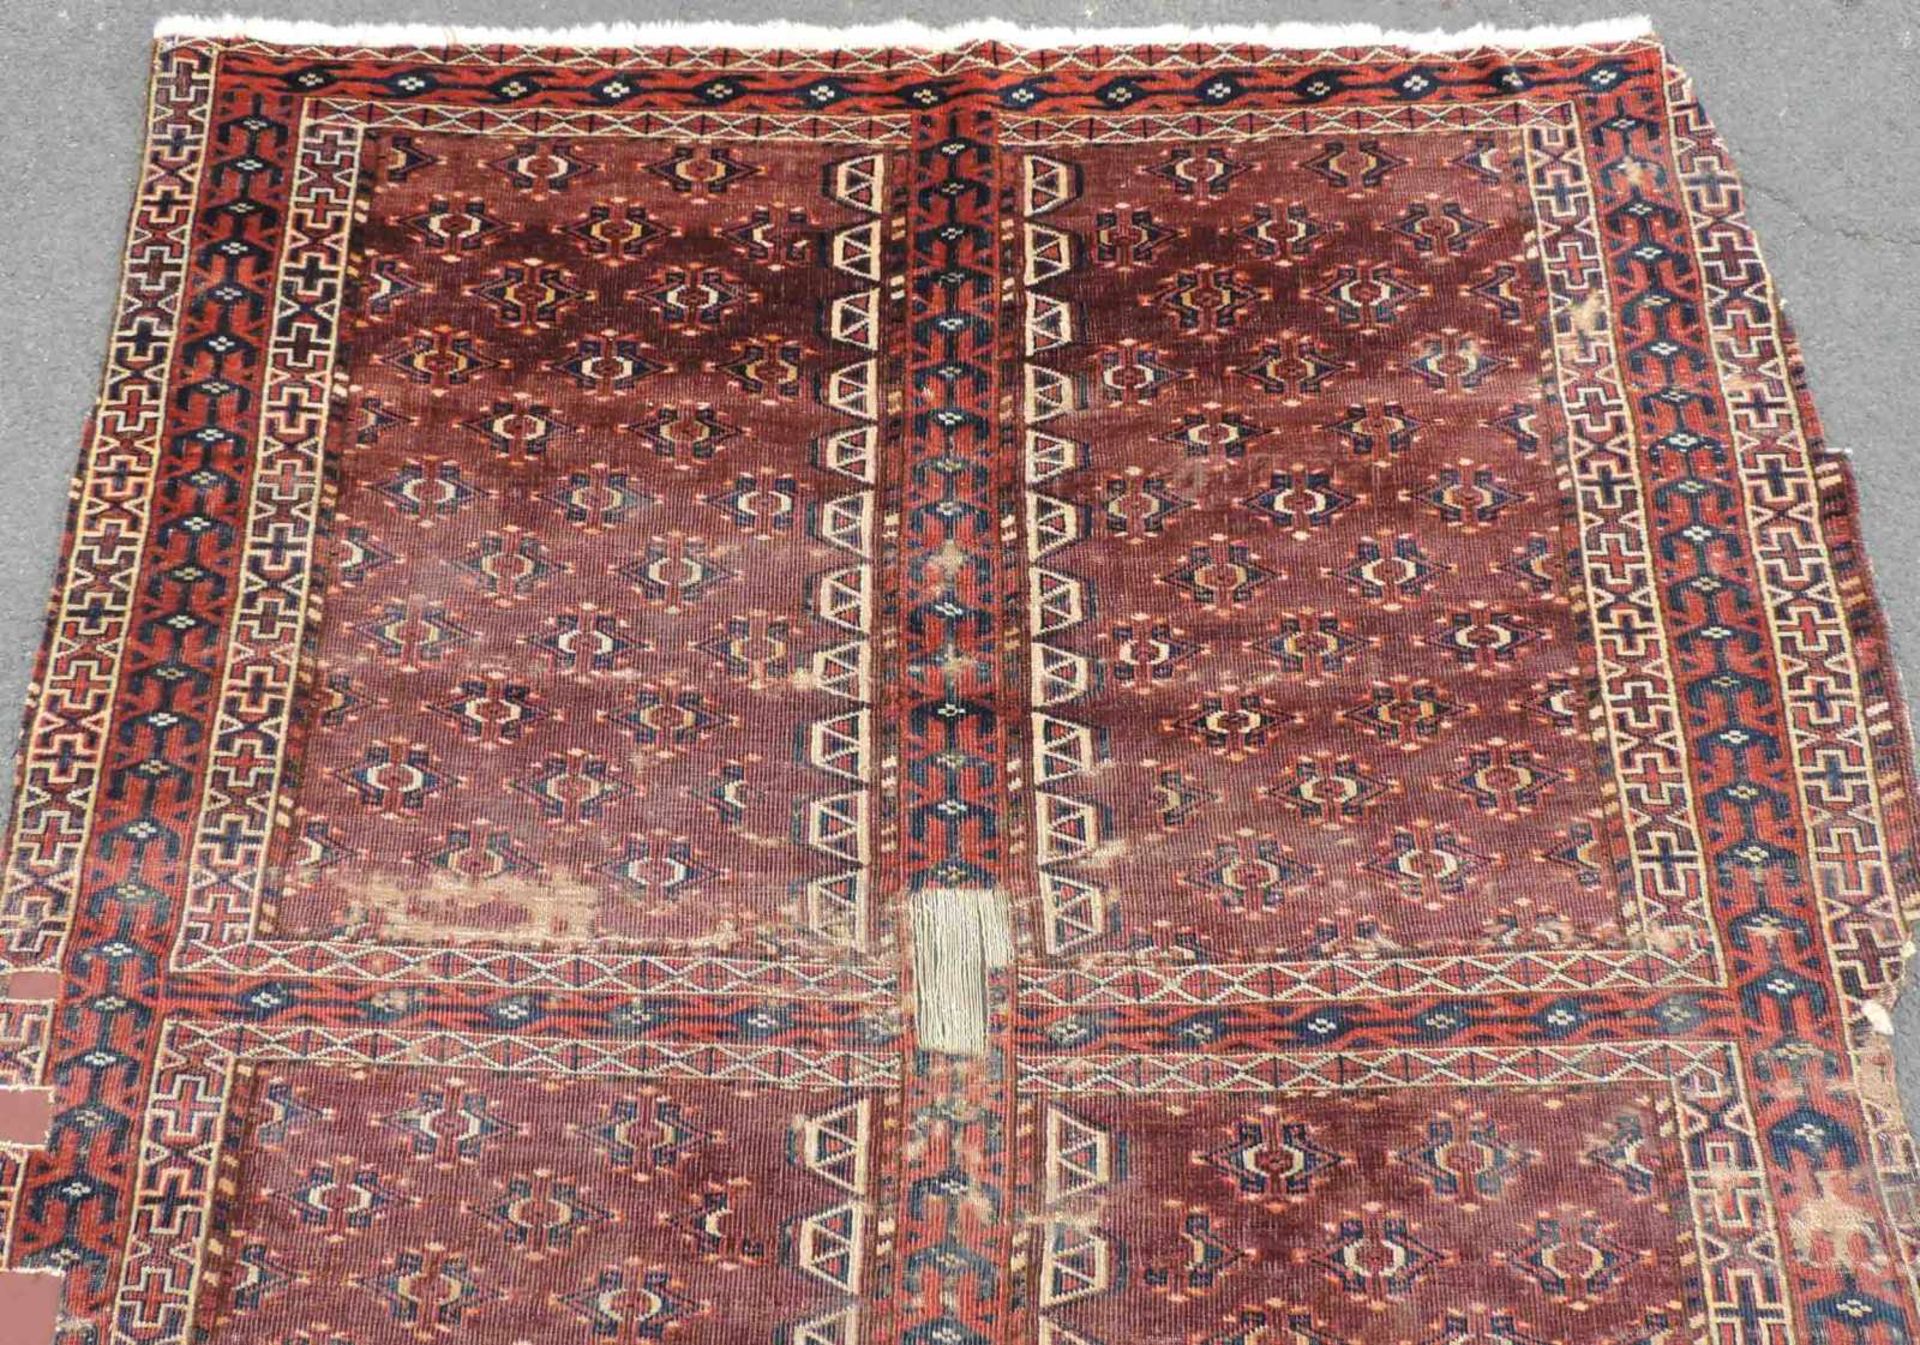 Jomud Engsi Zelteingangsteppich. Turkmenistan. Antik. 19. Jahrhundert. 144 cm x 133 cm. - Bild 3 aus 6